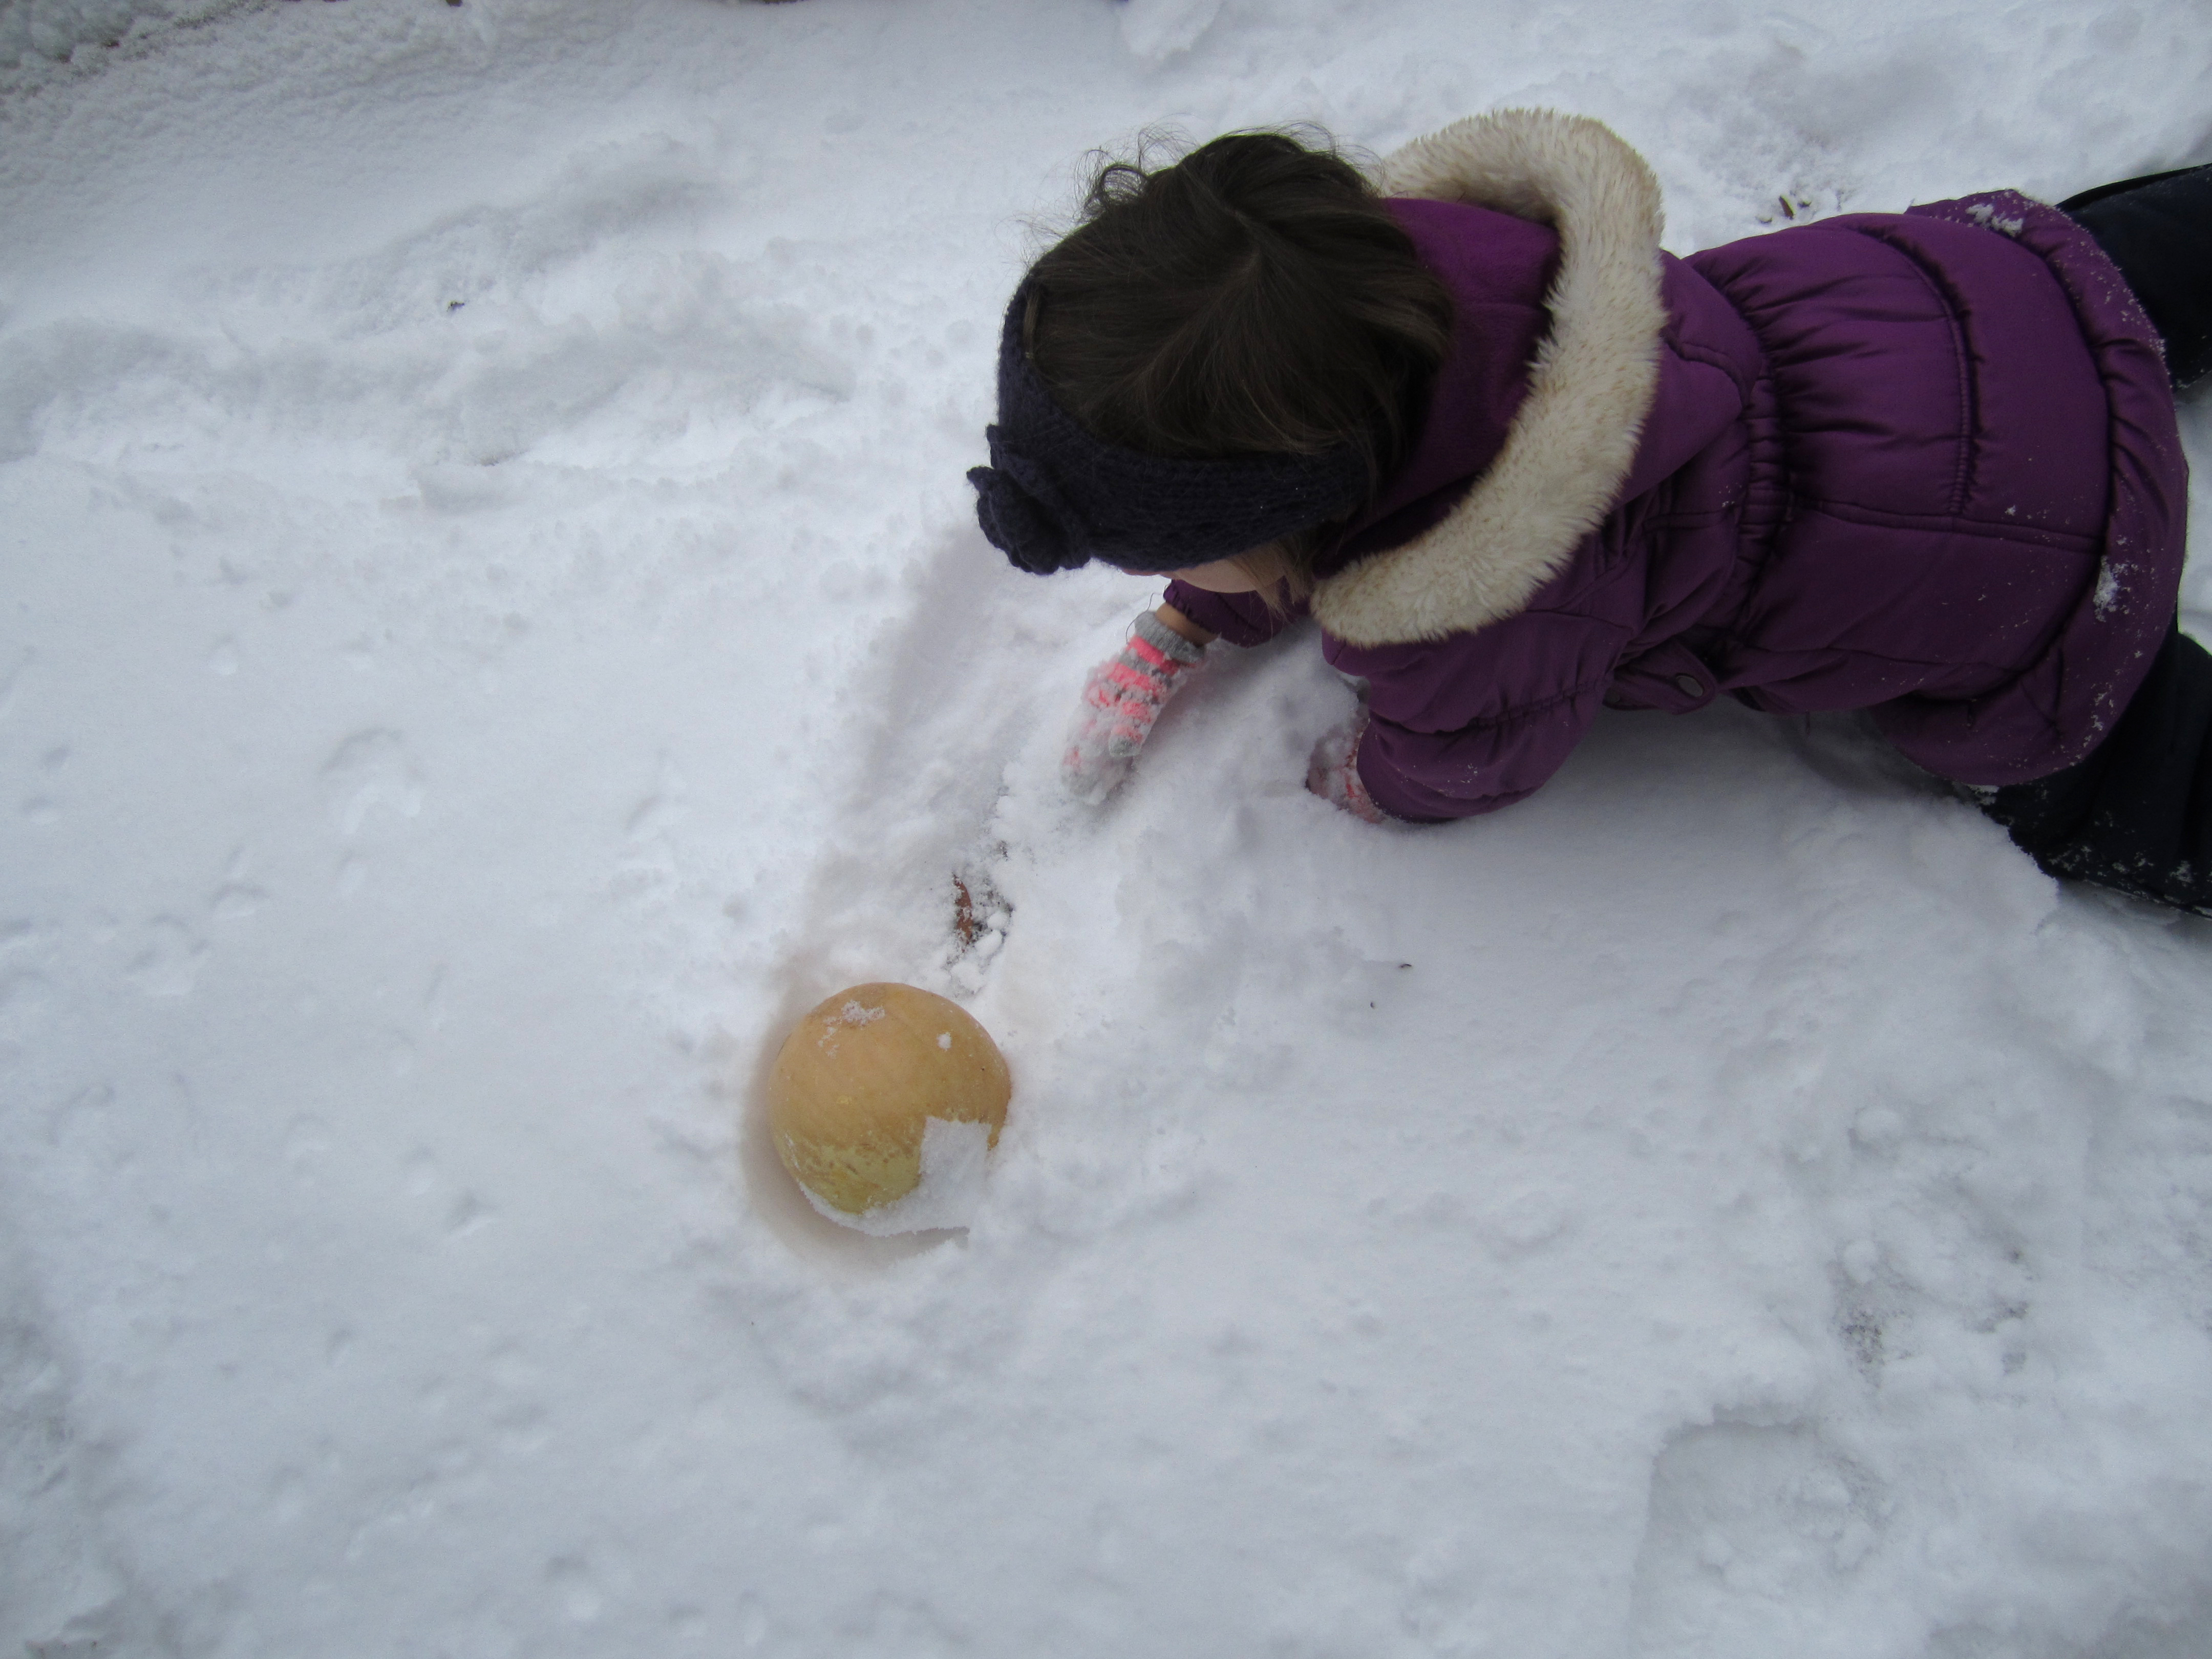 Child pushing a pumpkin through snow.